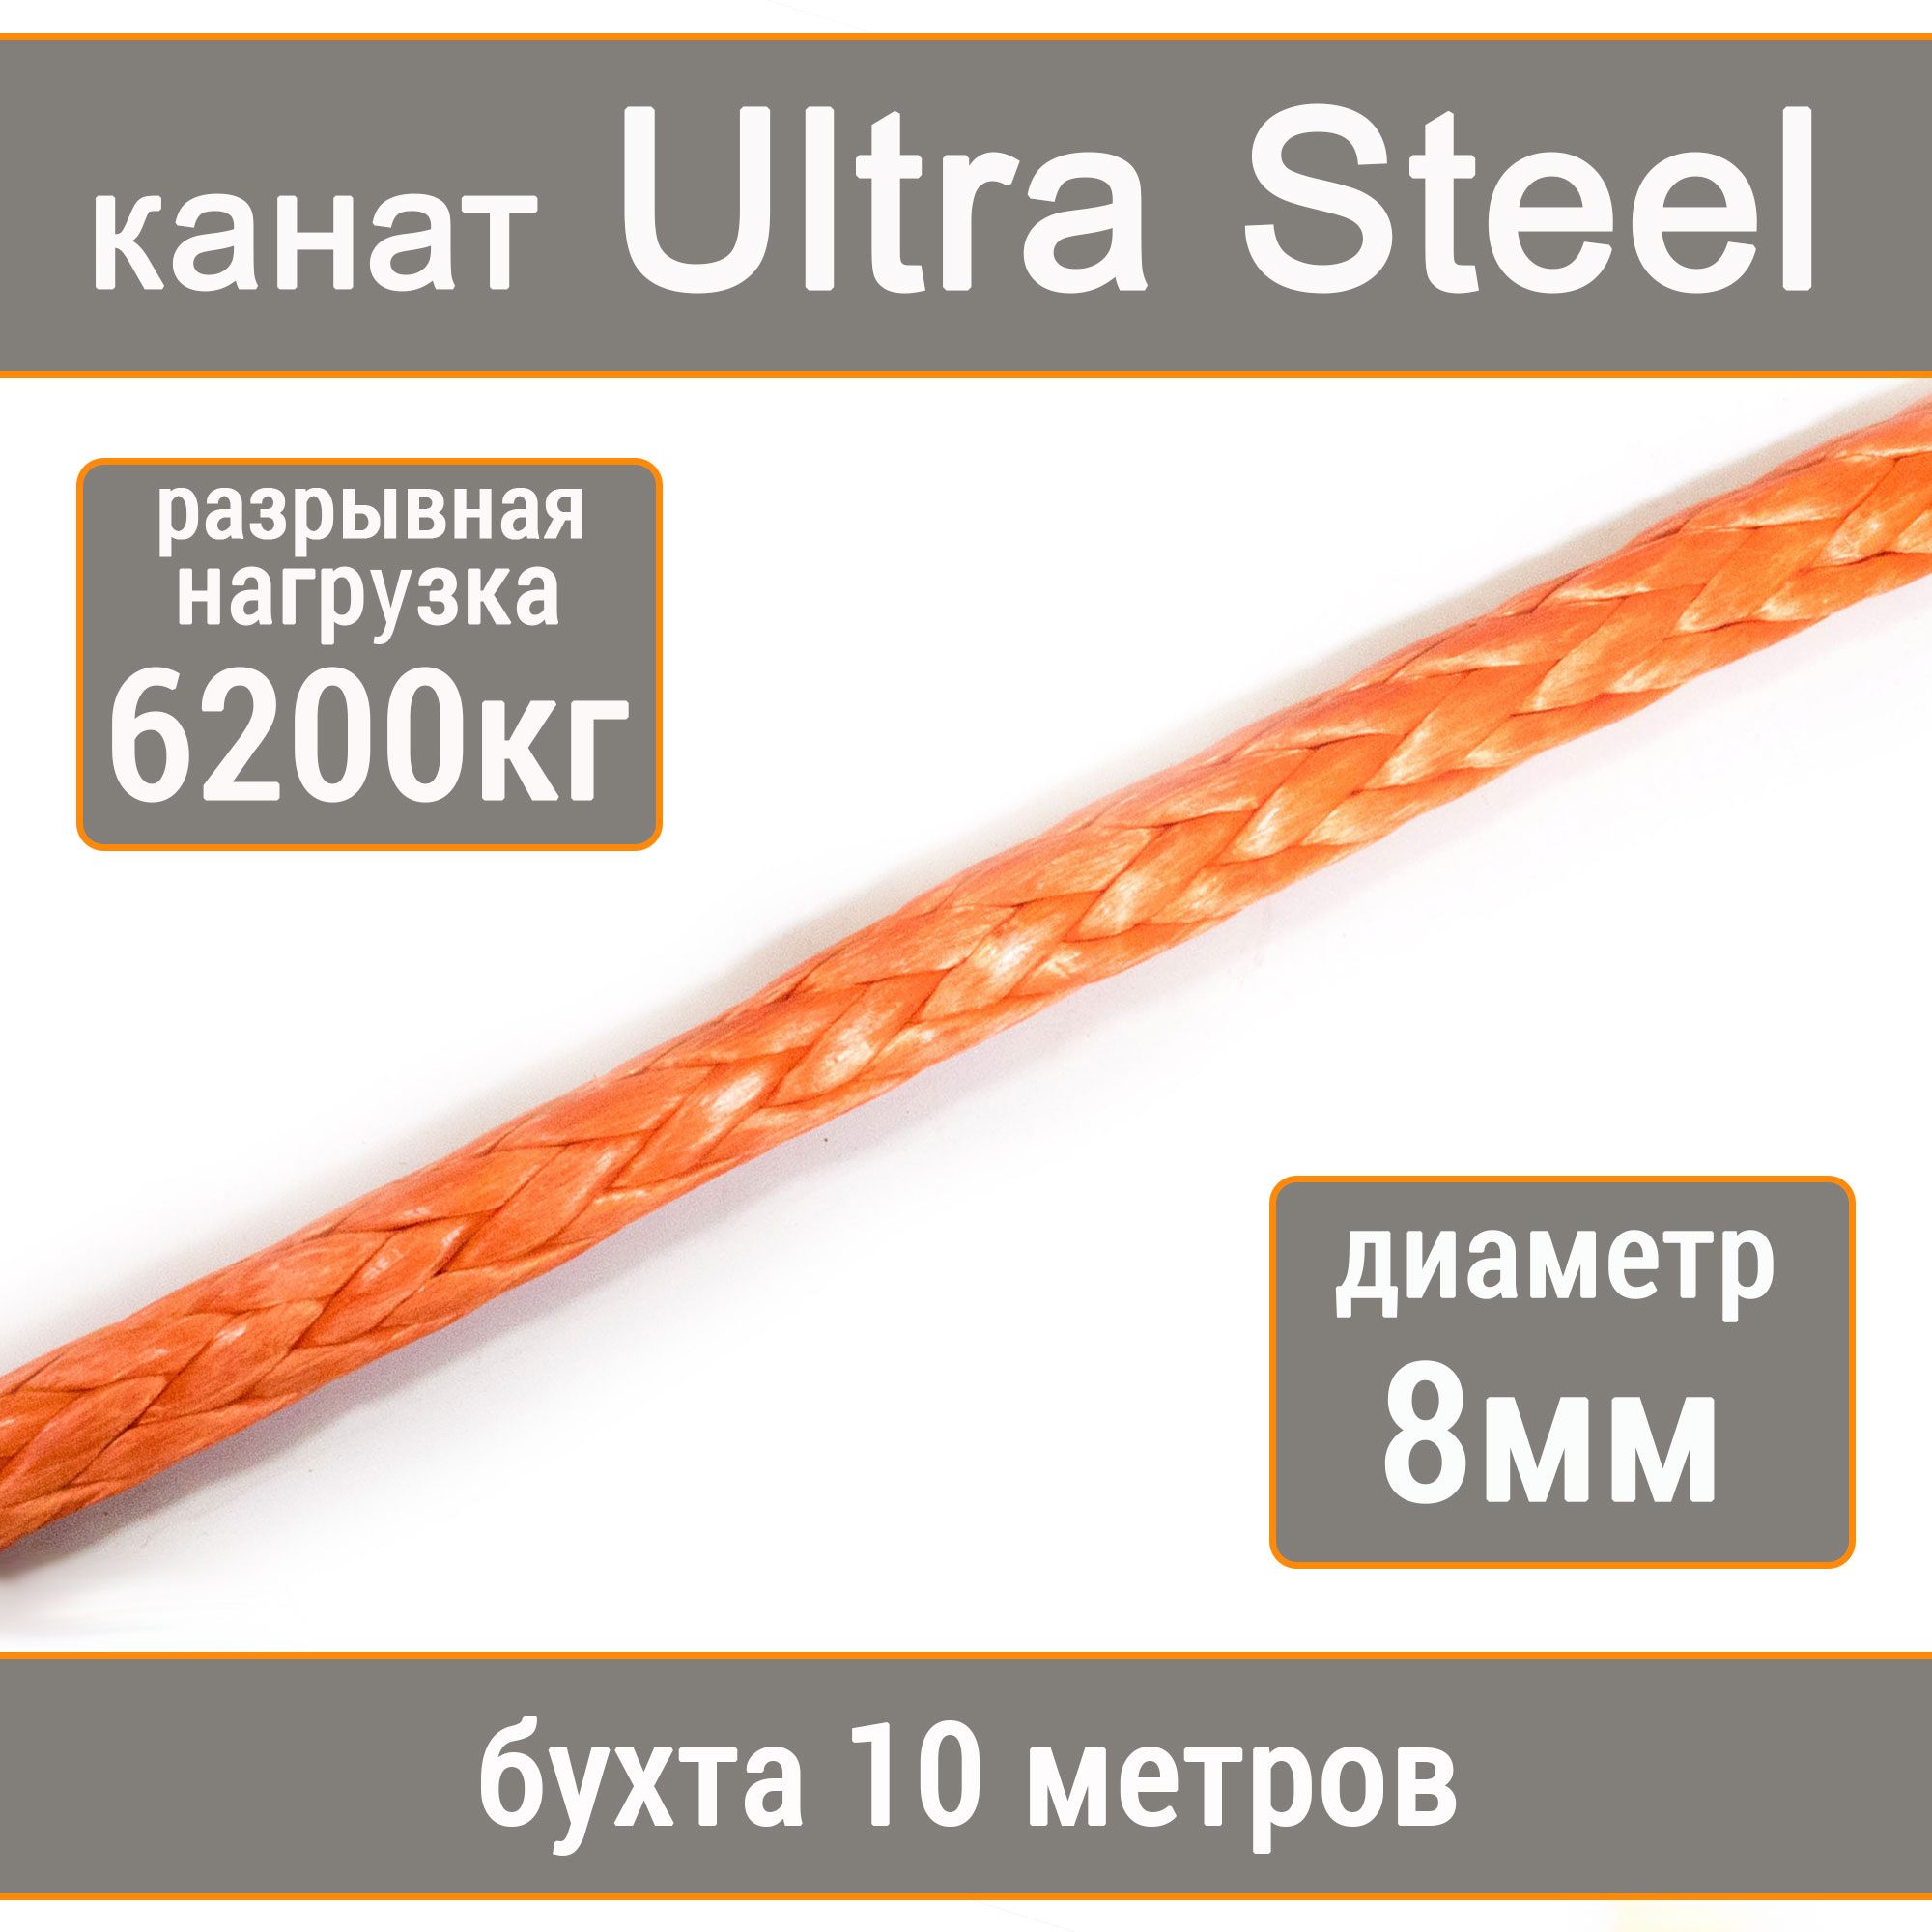 Высокопрочный синтетический канат UTX Ultra Steel 8мм р.н.6200кг, 007654321-108 flamingo игрушка для собак канат с узлами